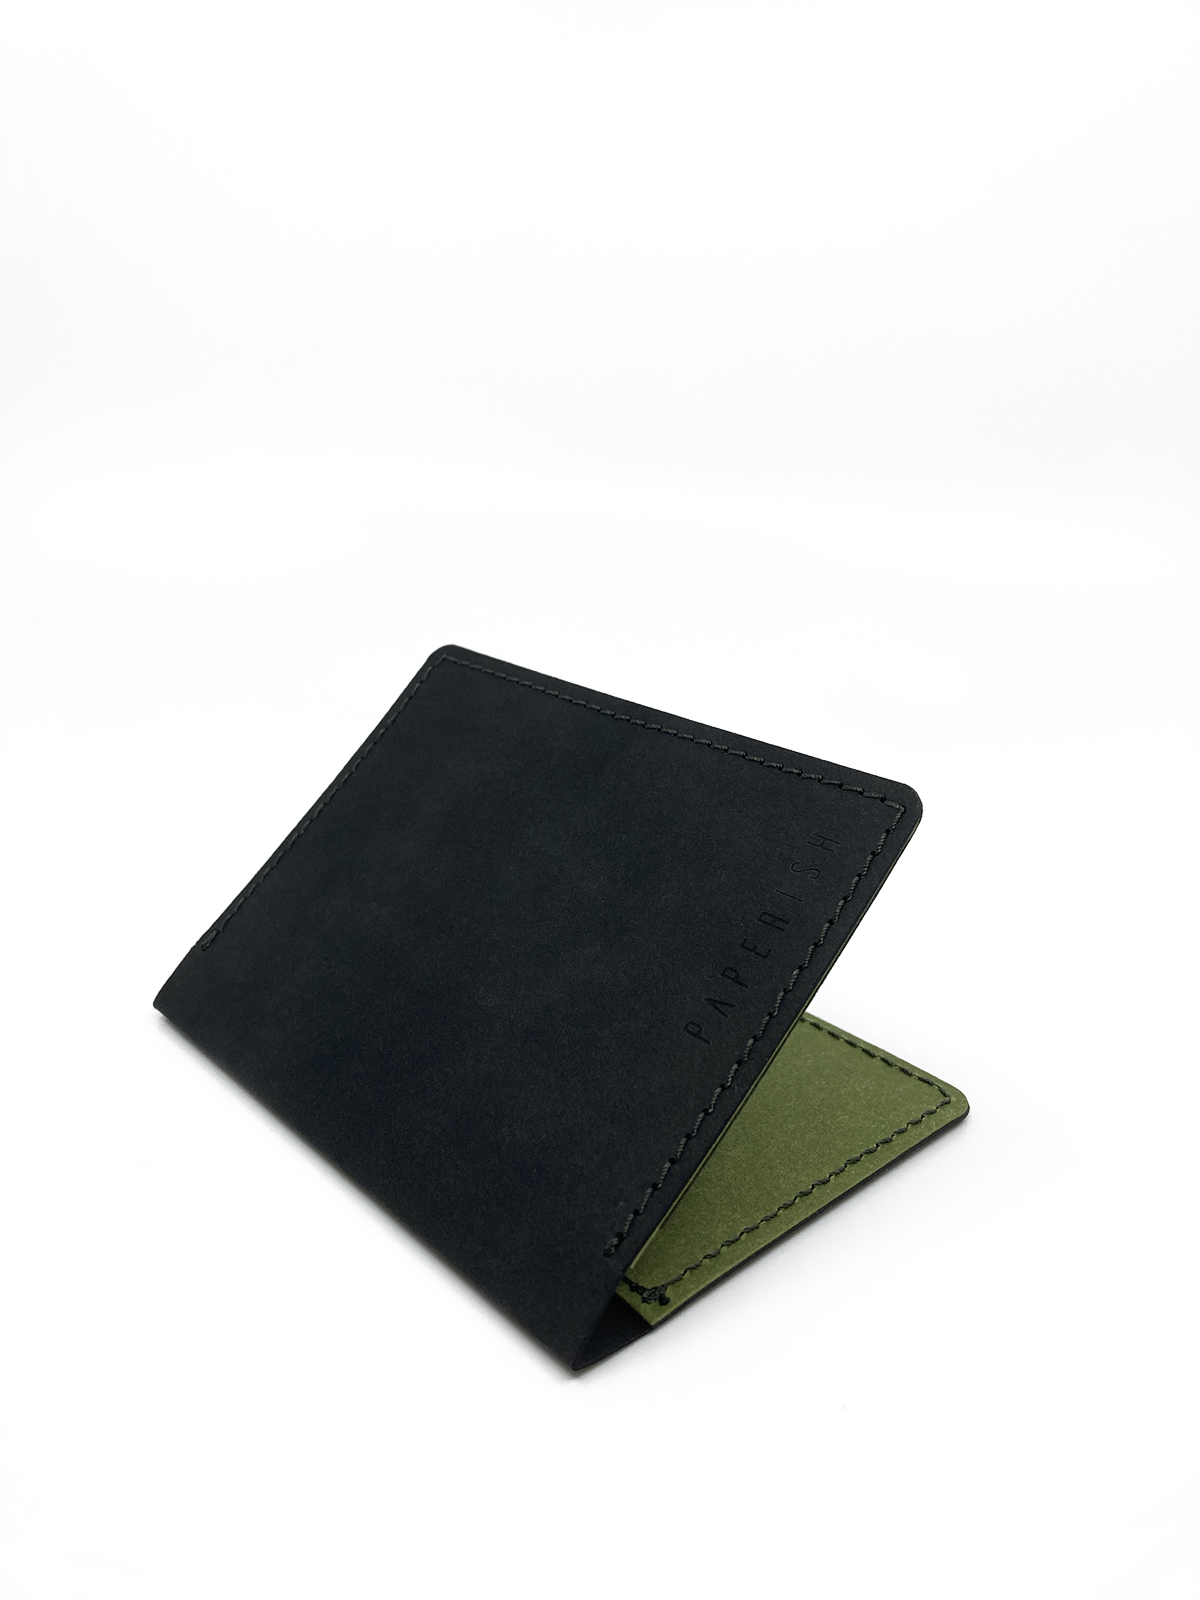 Micro wallet Black &amp; Green - 2.jpg